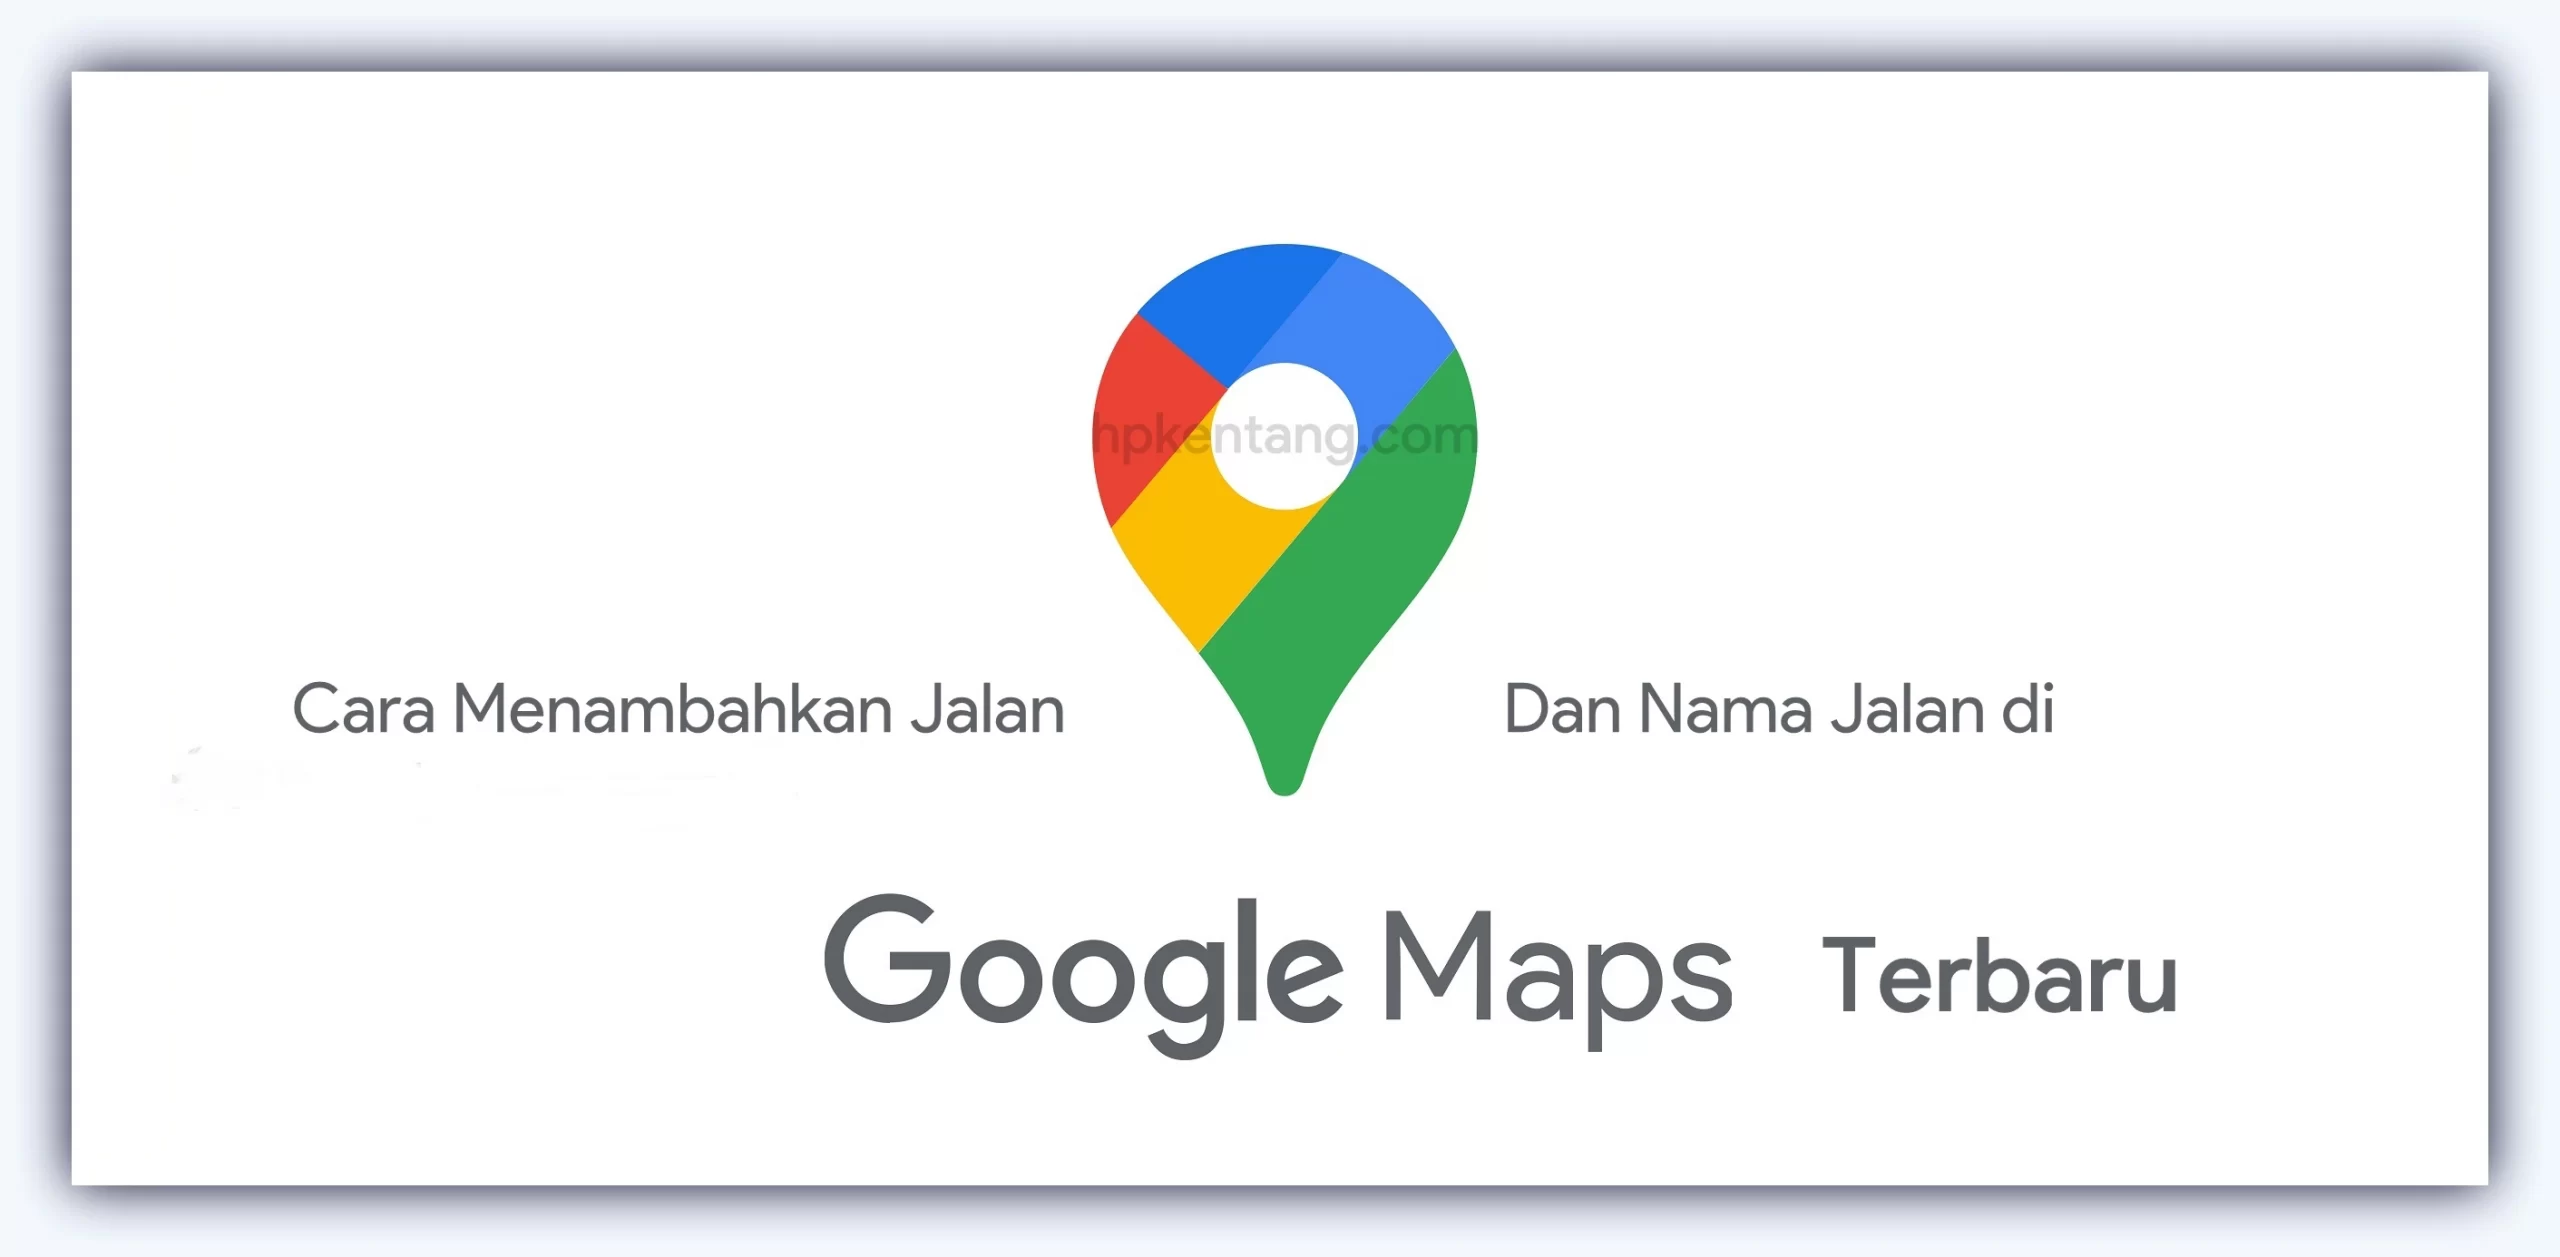 Cara Menambahkan Jalan Di Google Maps scaled